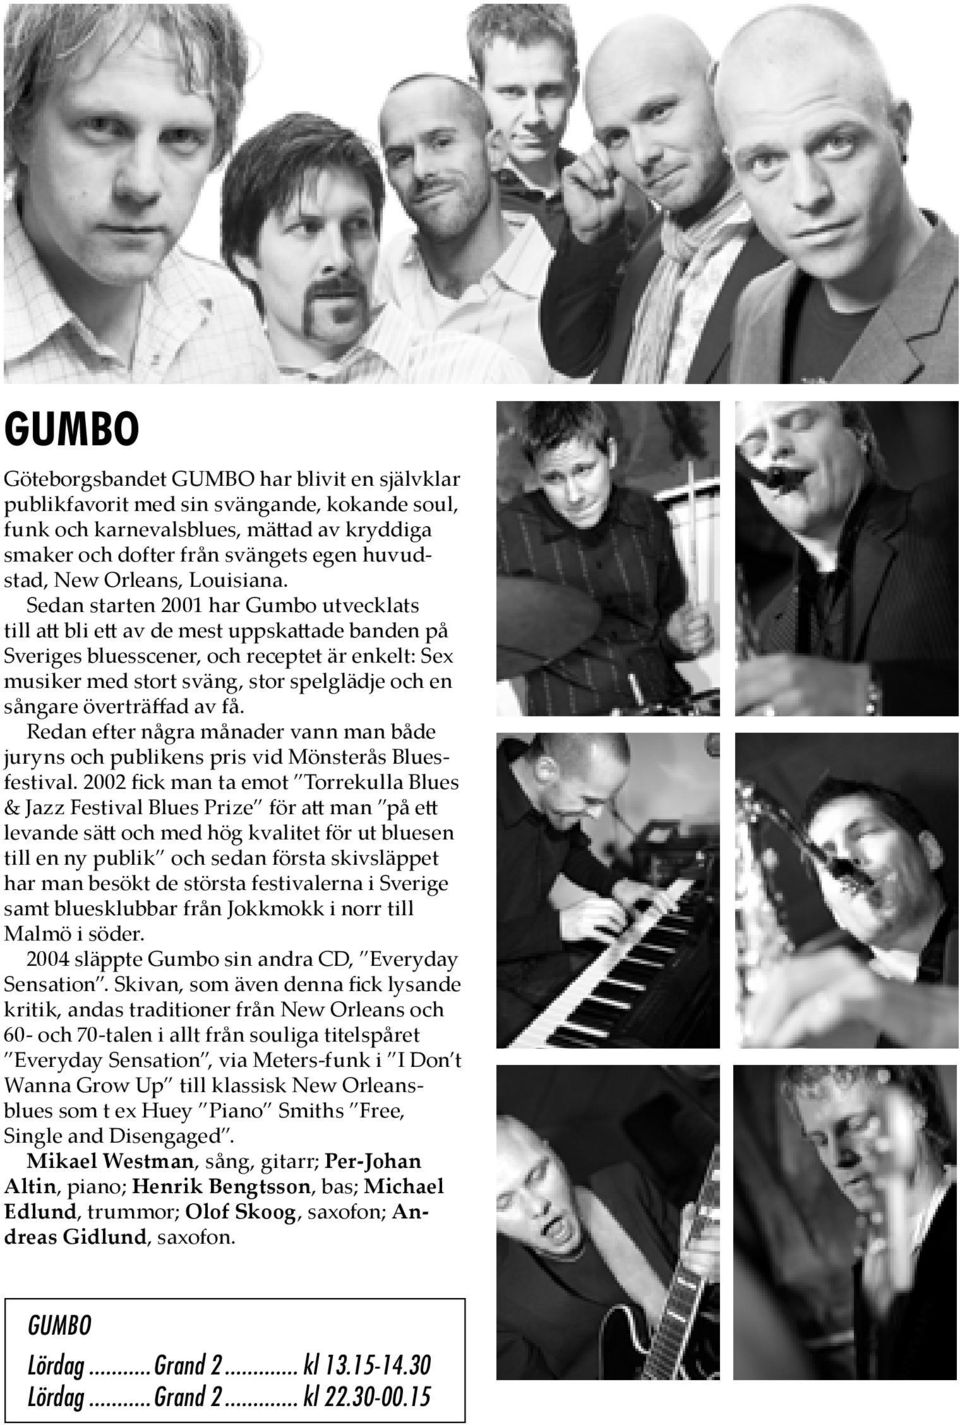 Sedan starten 2001 har Gumbo utvecklats till a bli e av de mest uppska ade banden på Sveriges bluesscener, och receptet är enkelt: Sex musiker med stort sväng, stor spelglädje och en sångare